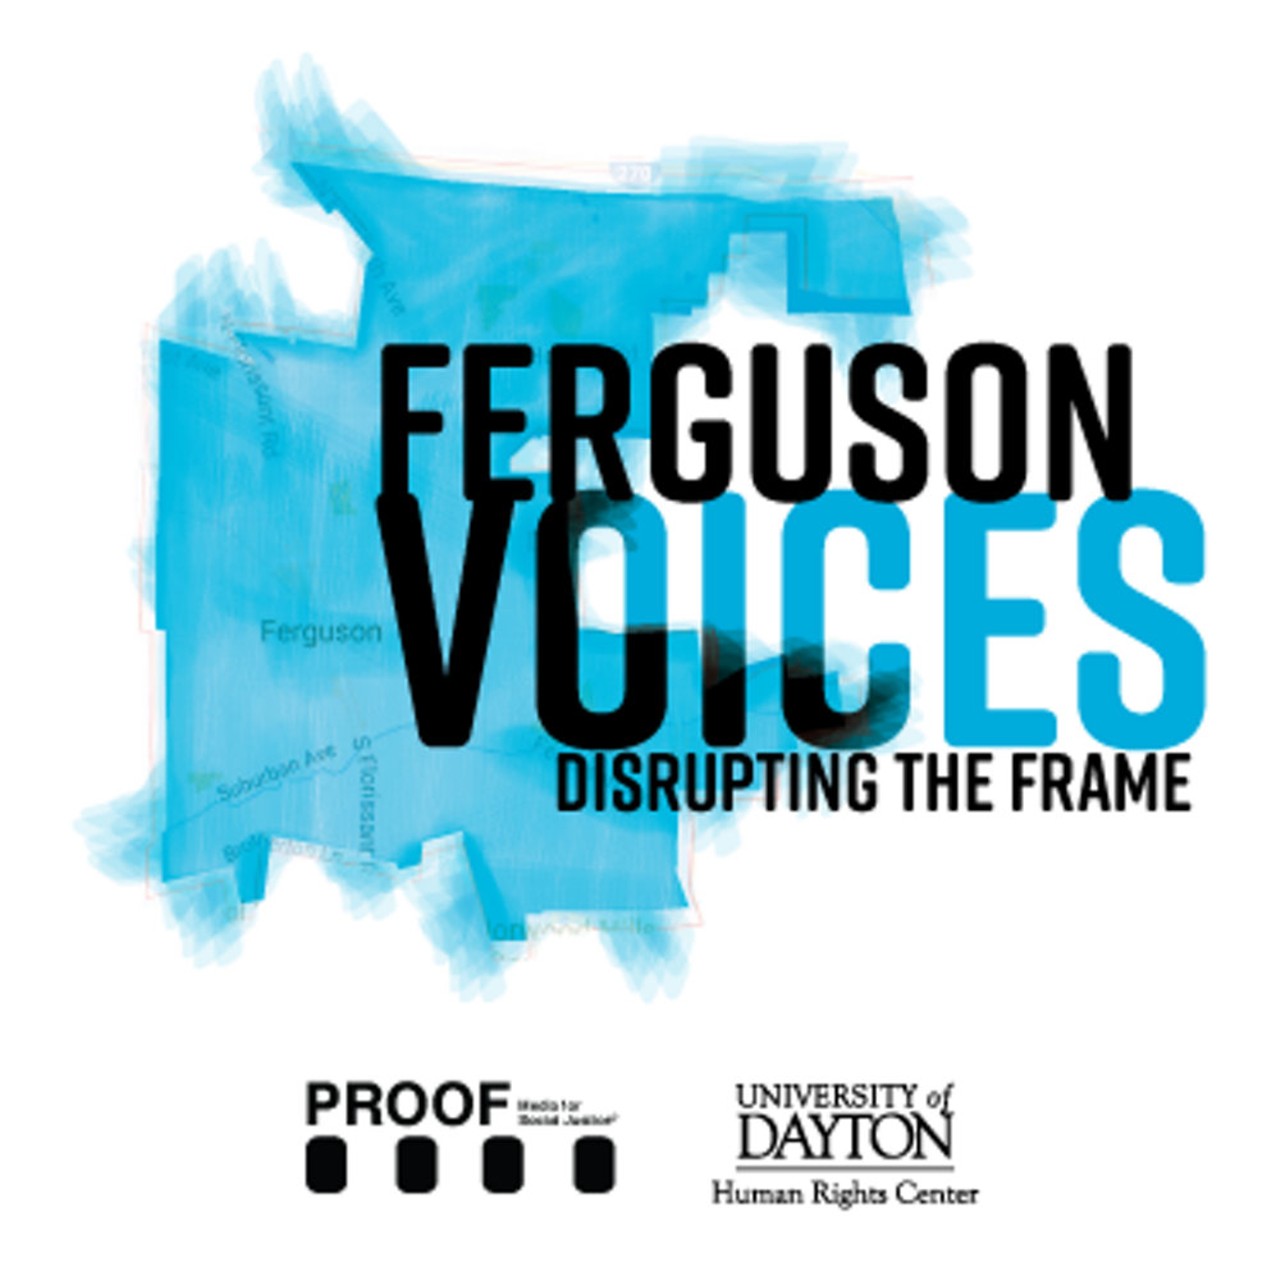 Ferguson Voices: Disrupting the Frame
Through Aug. 31, 9 a.m.-9 p.m. St. Louis Public Library, 225 N. Euclid Ave., St. Louis.